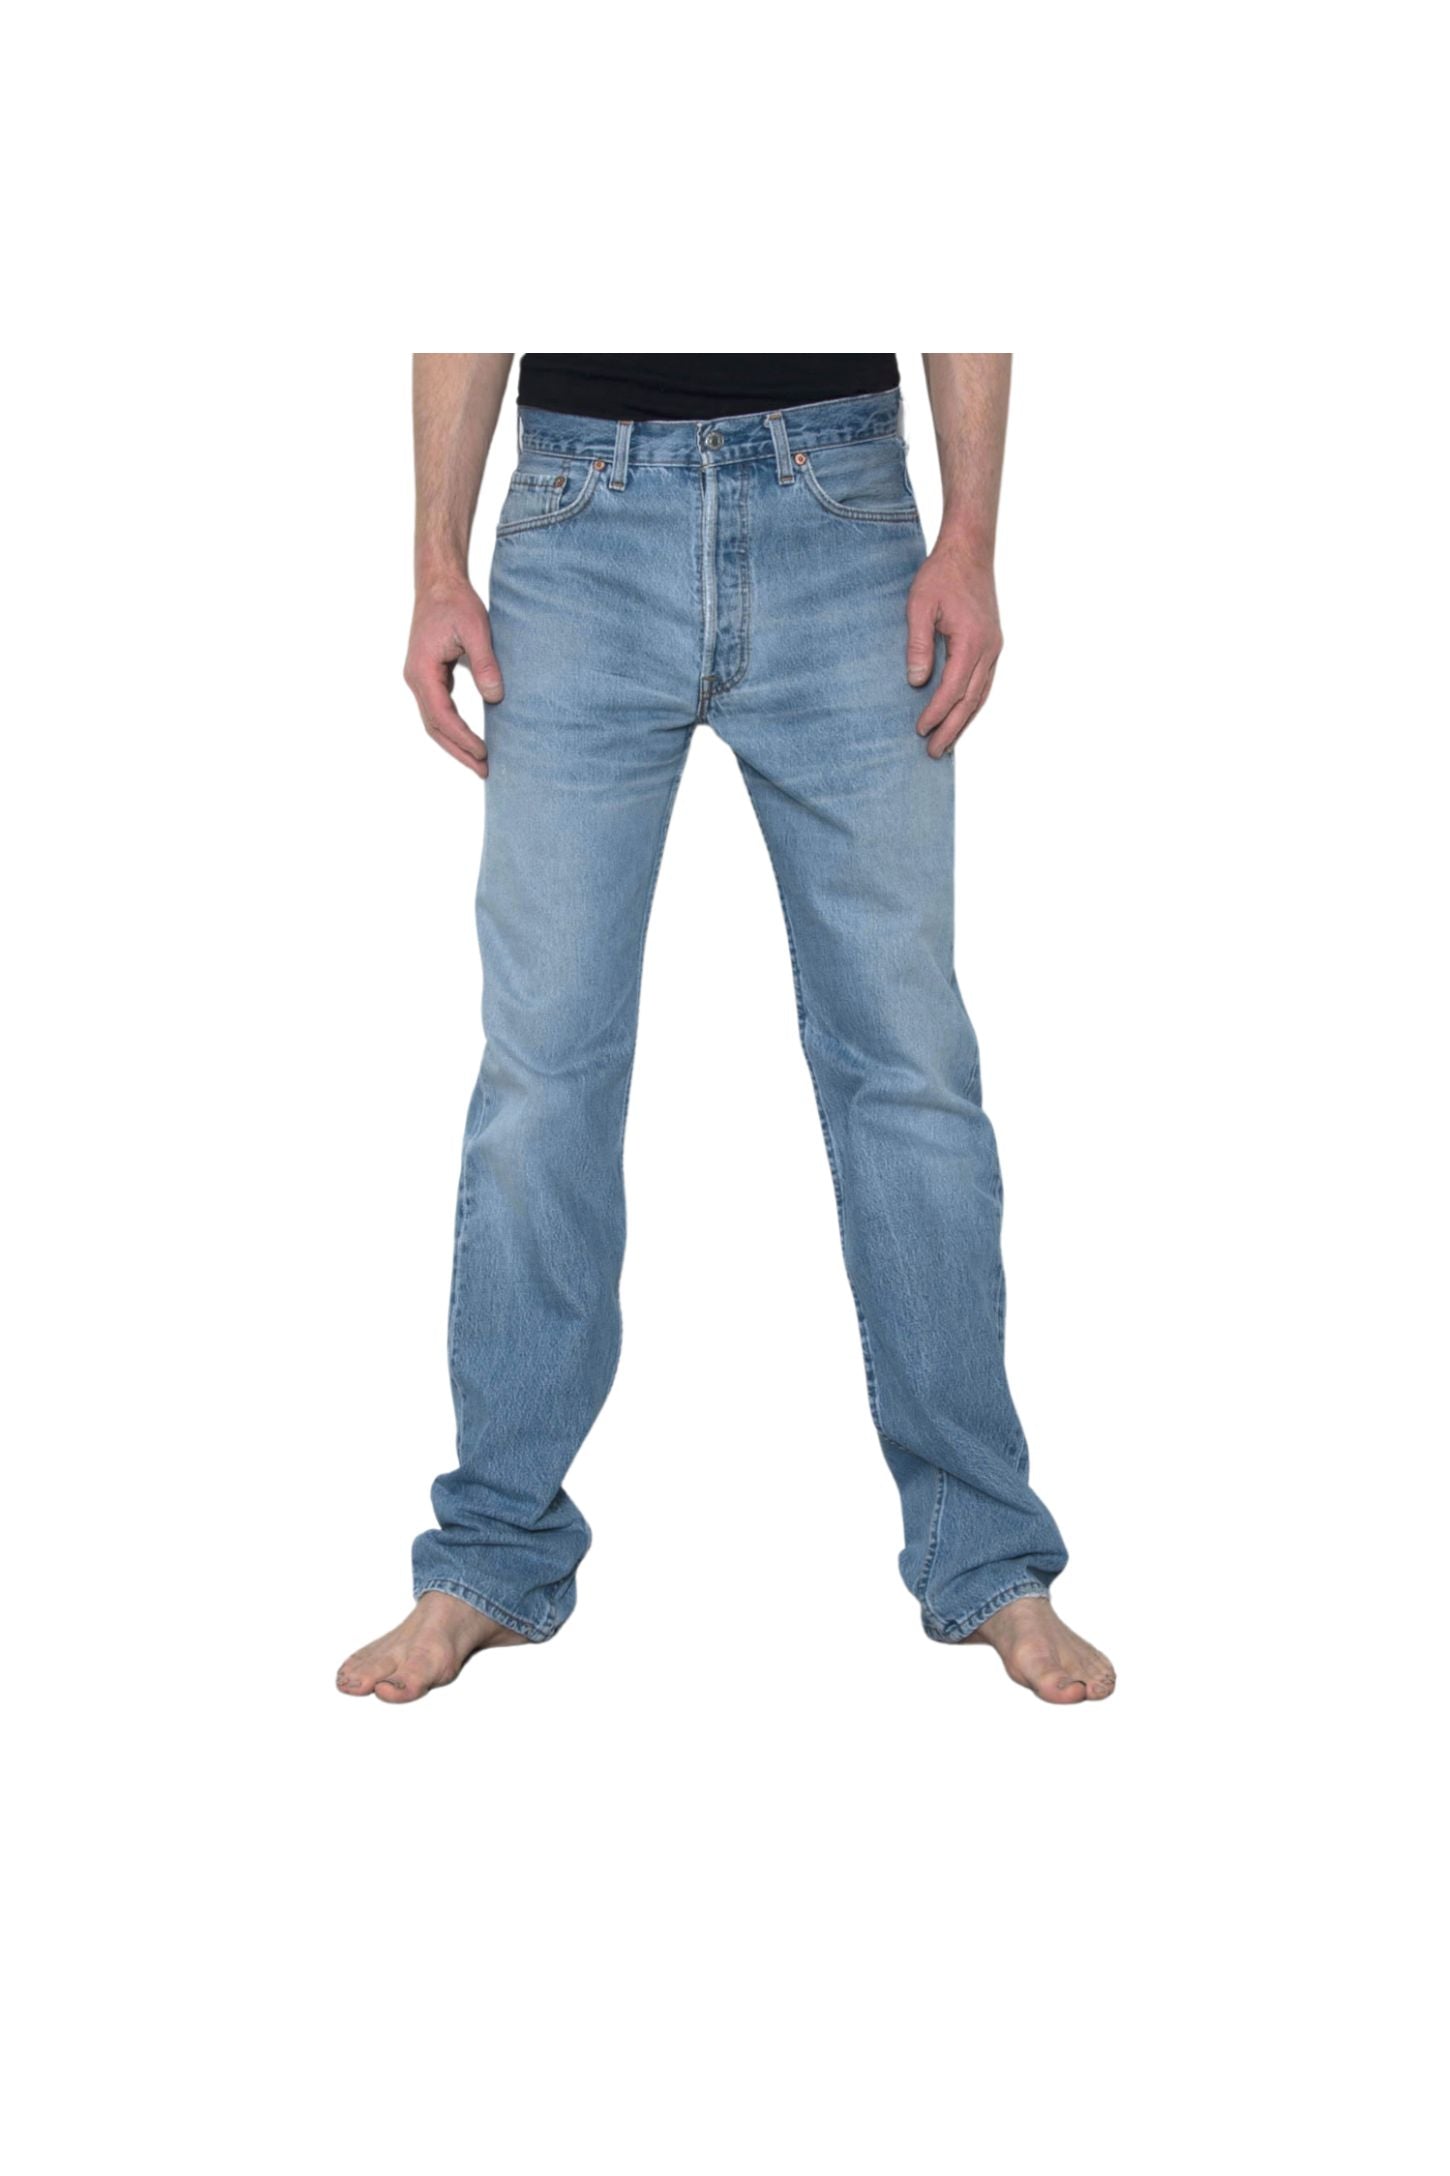 Levi's 501 Original Fit Jeans Blue, Second Hand